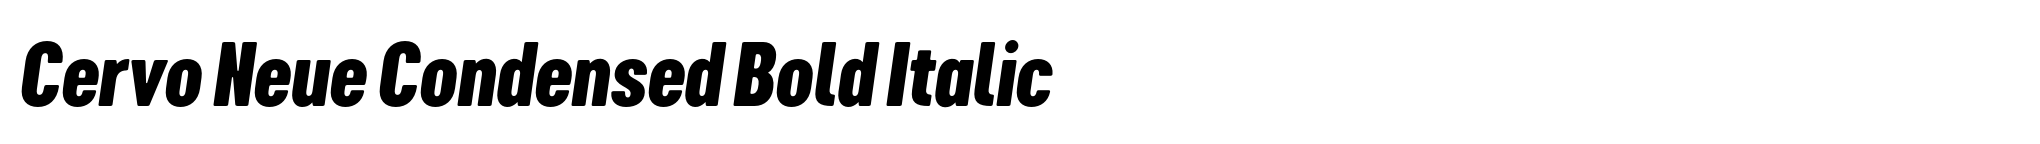 Cervo Neue Condensed Bold Italic image